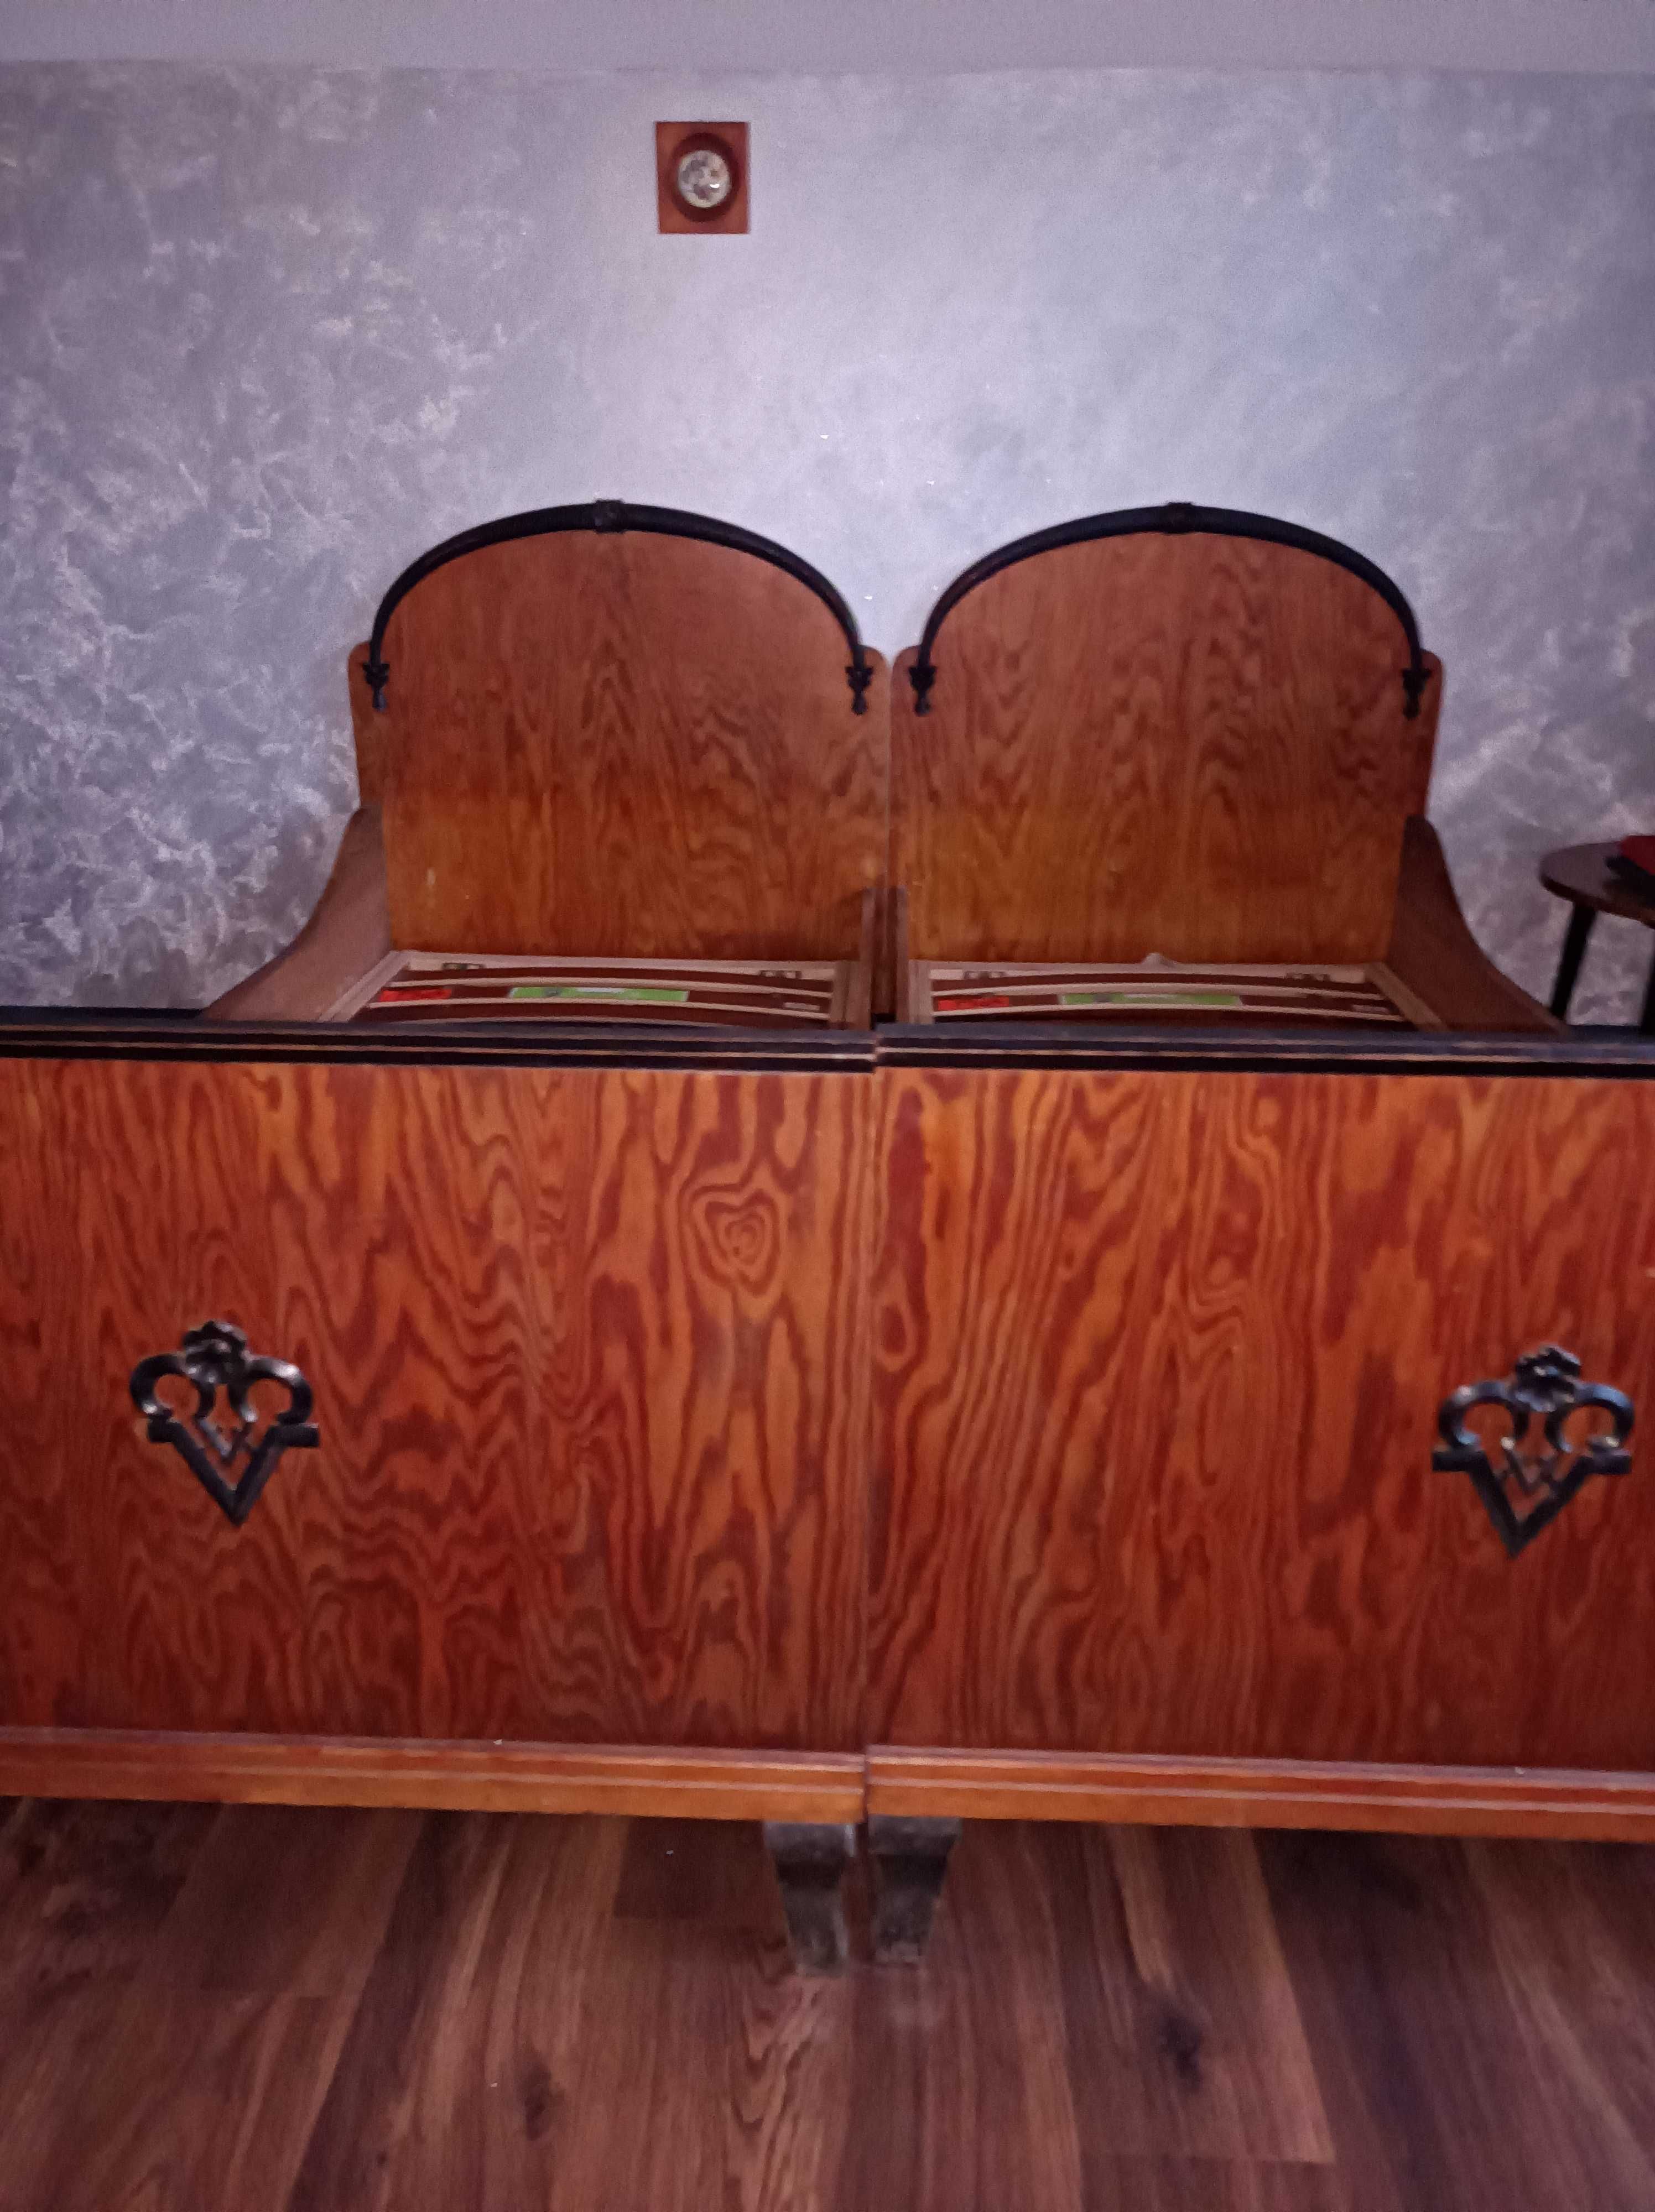 Antyki-oryginał.Stare łóżka drewniane-2szt.